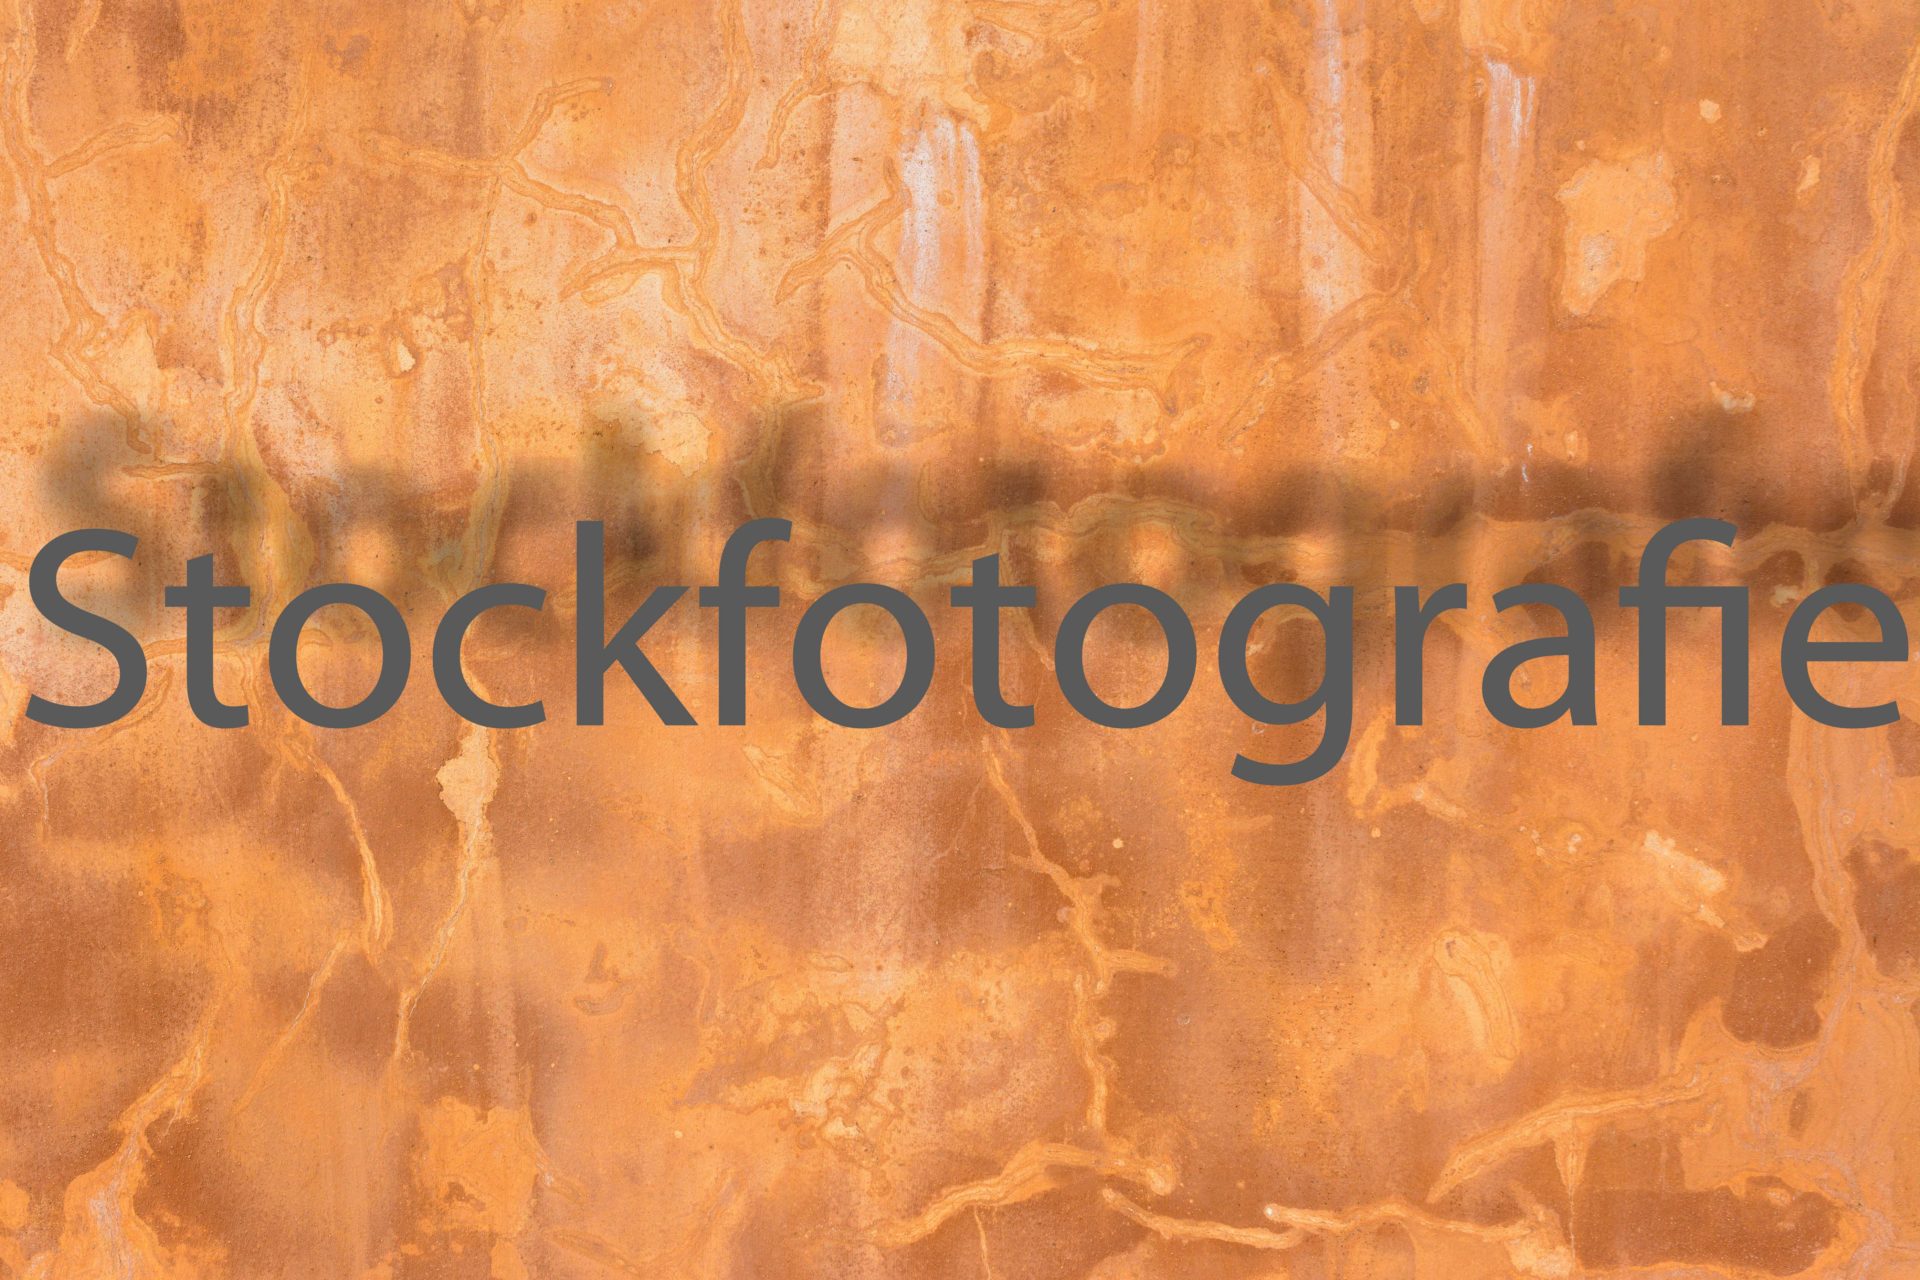 Stockfotografie für Anfänger, Teil 2 Agenturen & Motive.